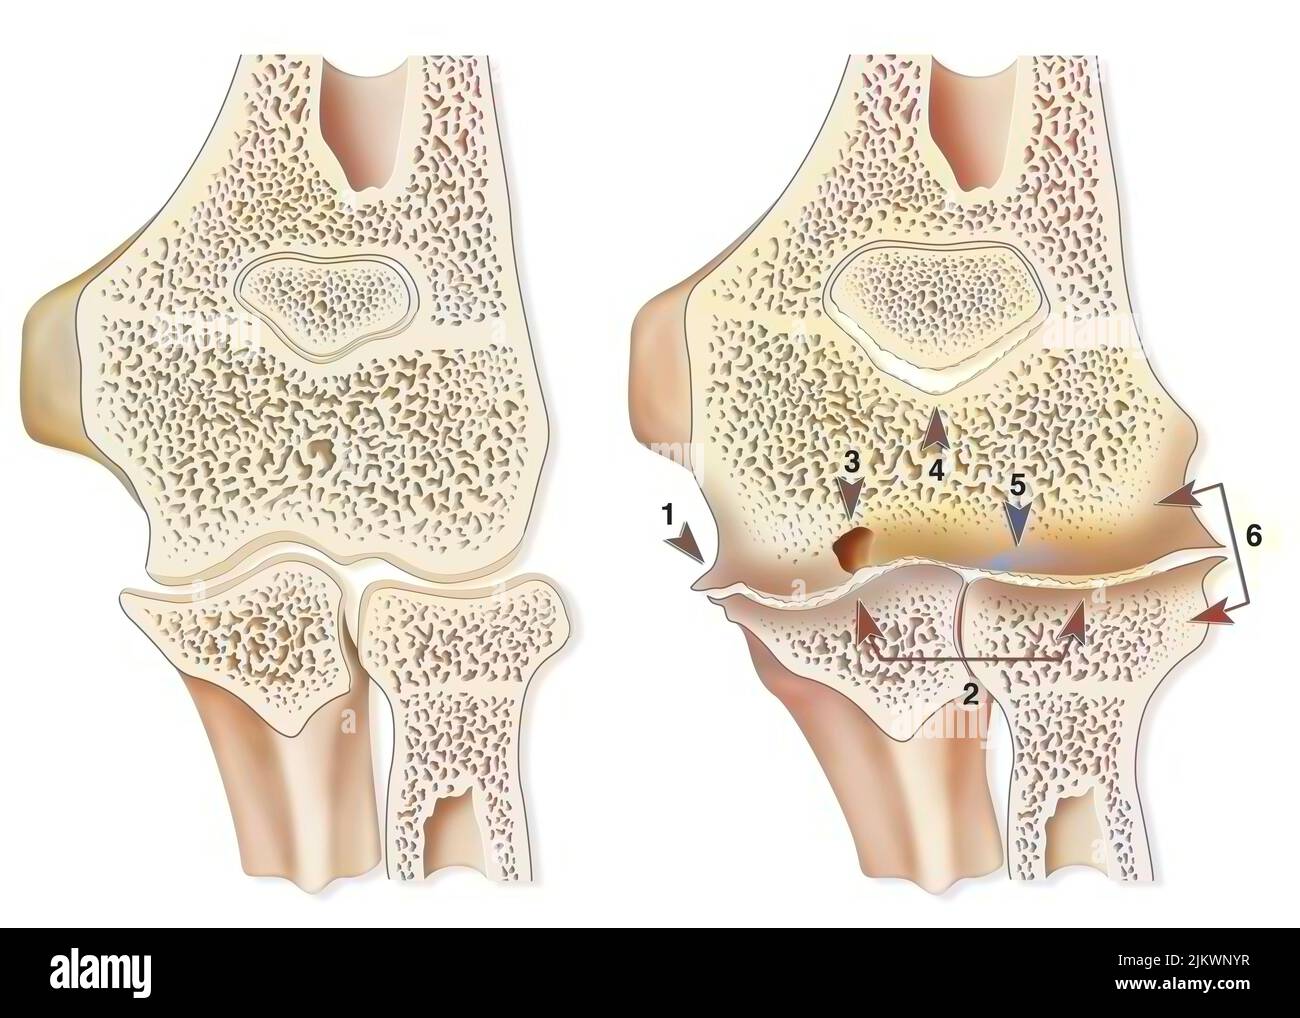 Confronto tra un gomito sano e un'artropatia emofilica (emartrosi). Foto Stock